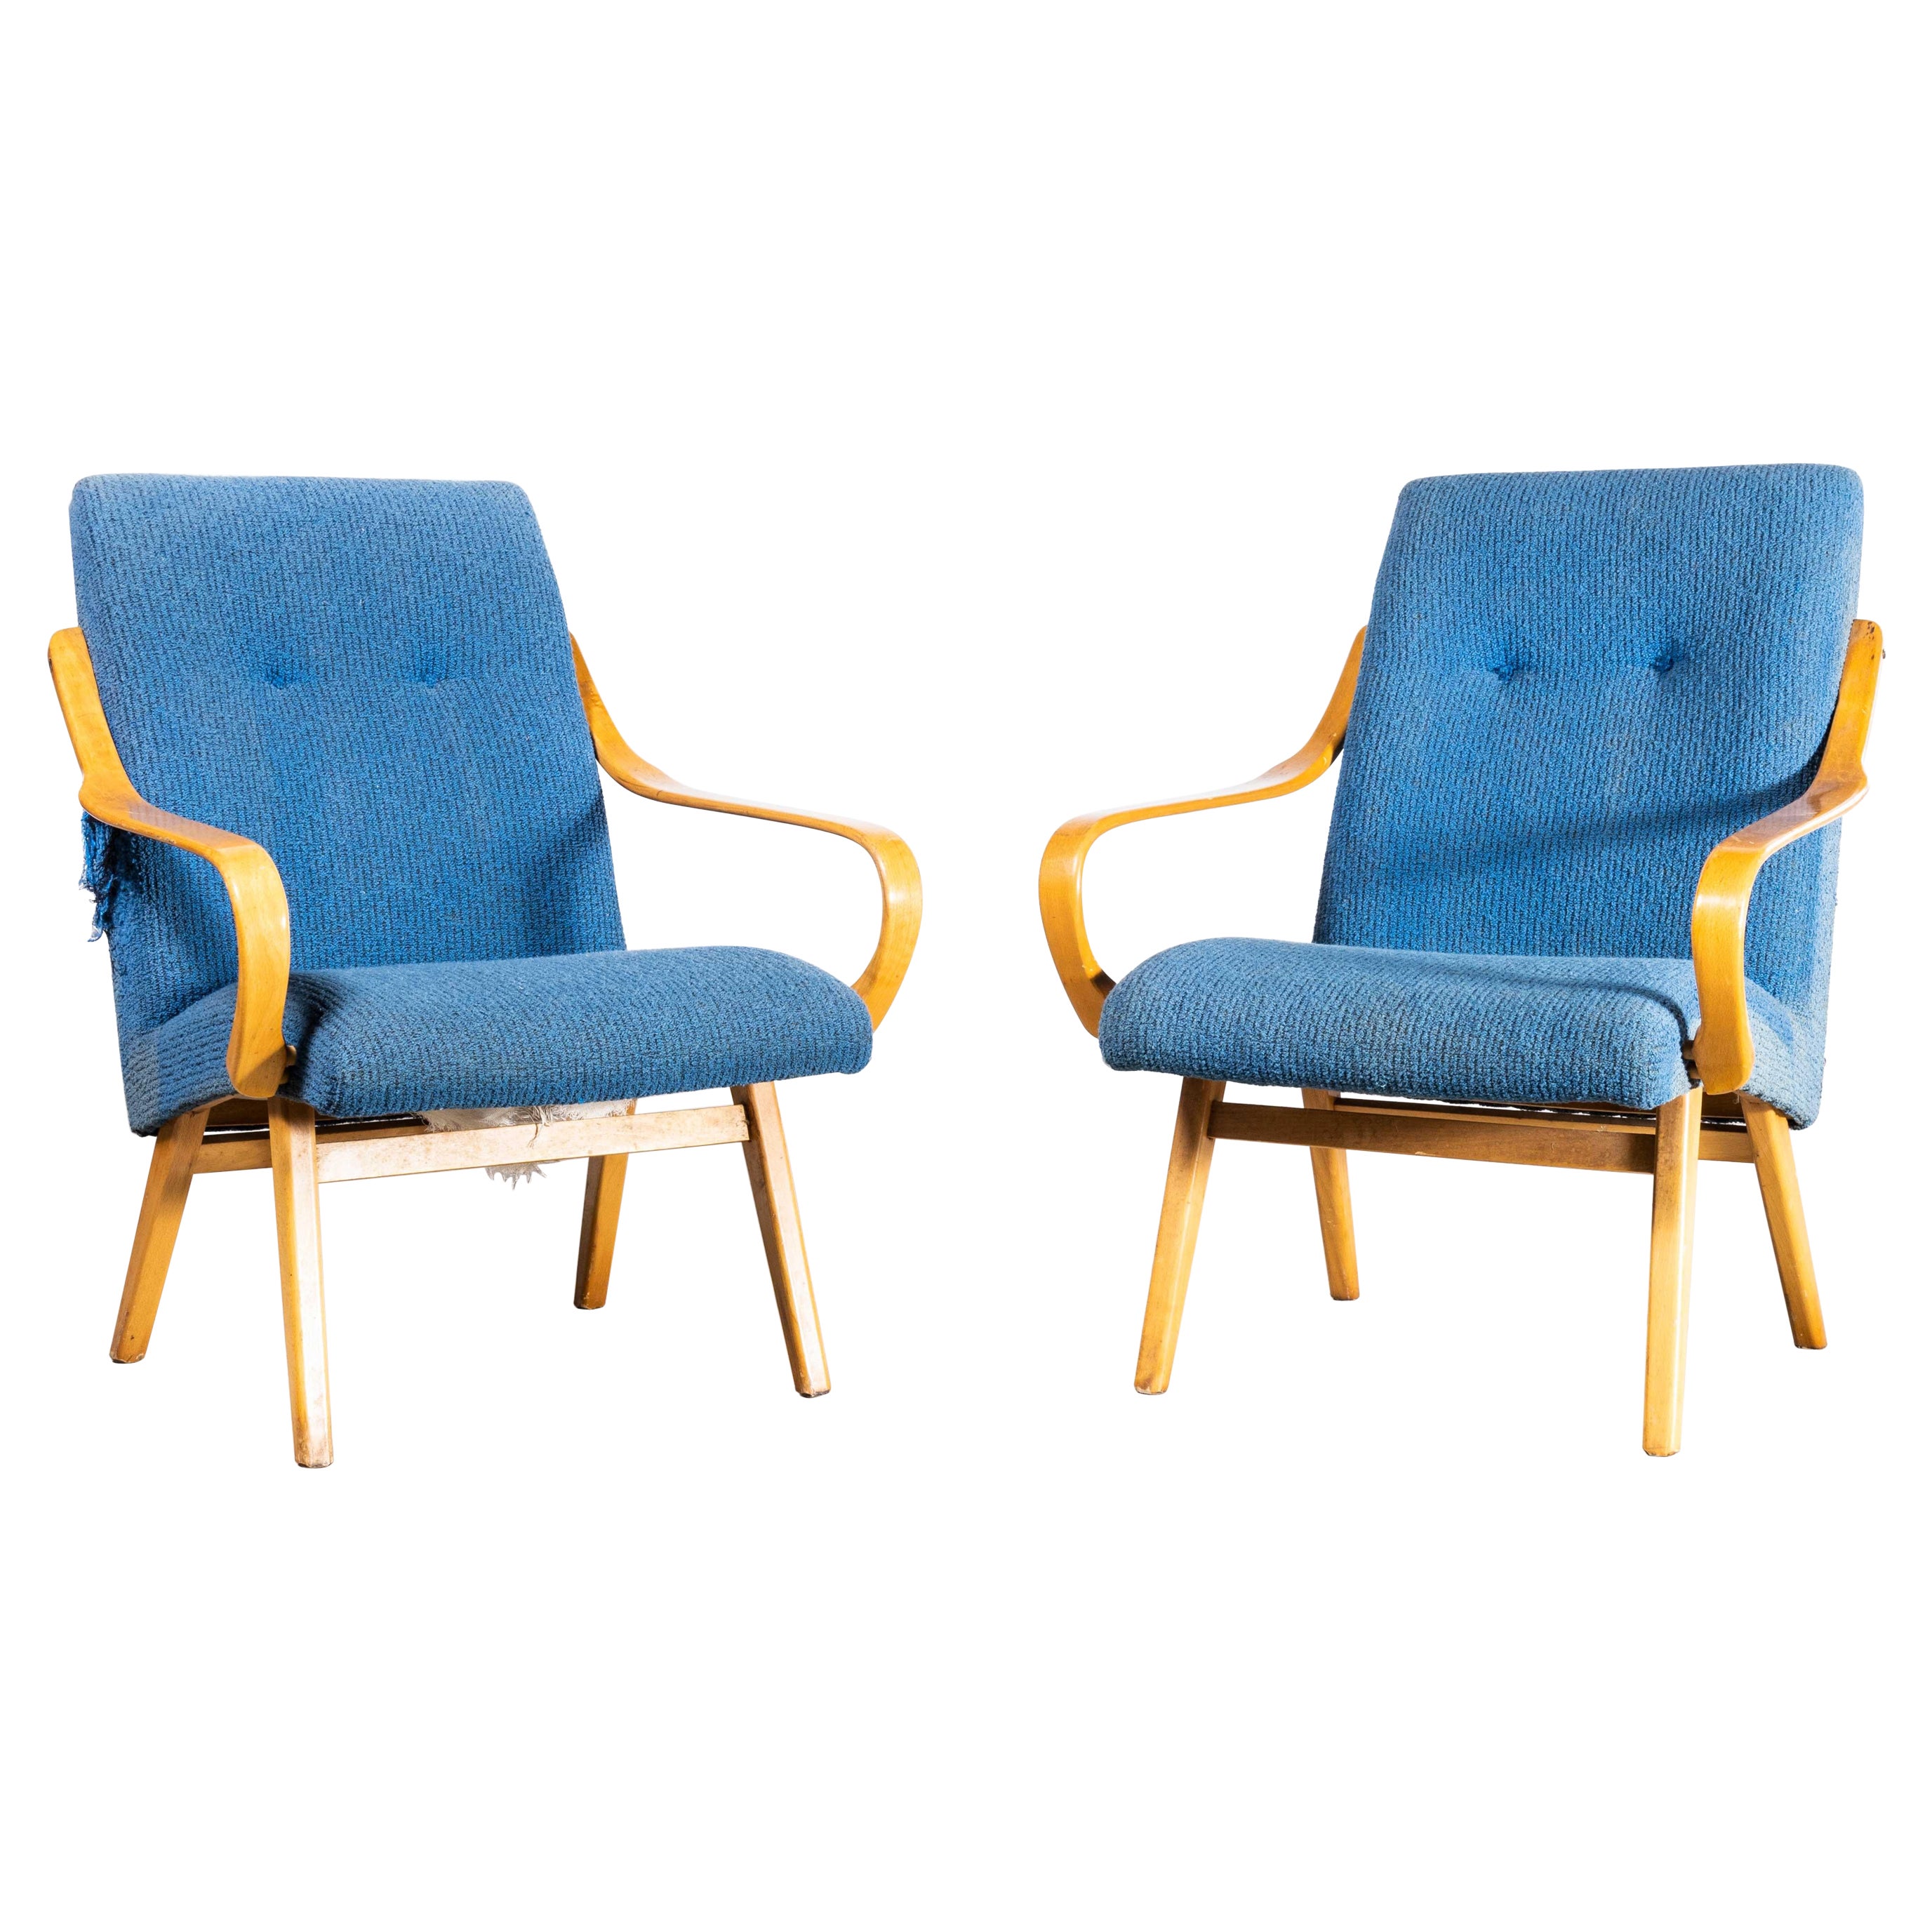 Jaroslav Smidek Original-Sessel aus den 1950er Jahren – Paar pulverblau